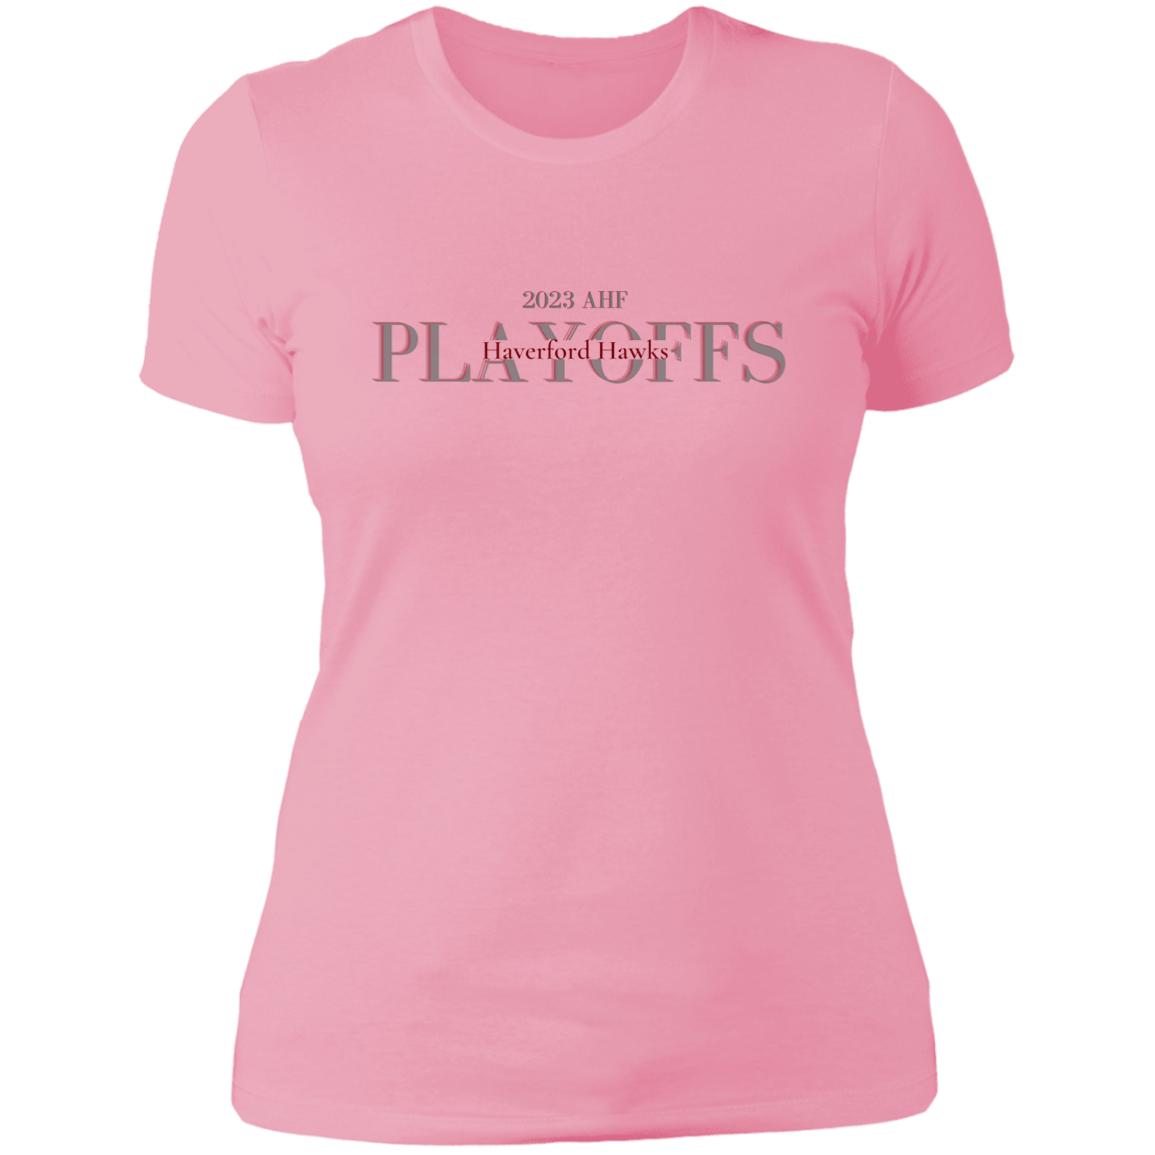 Hawks Playoffs Ladies' Boyfriend T-Shirt